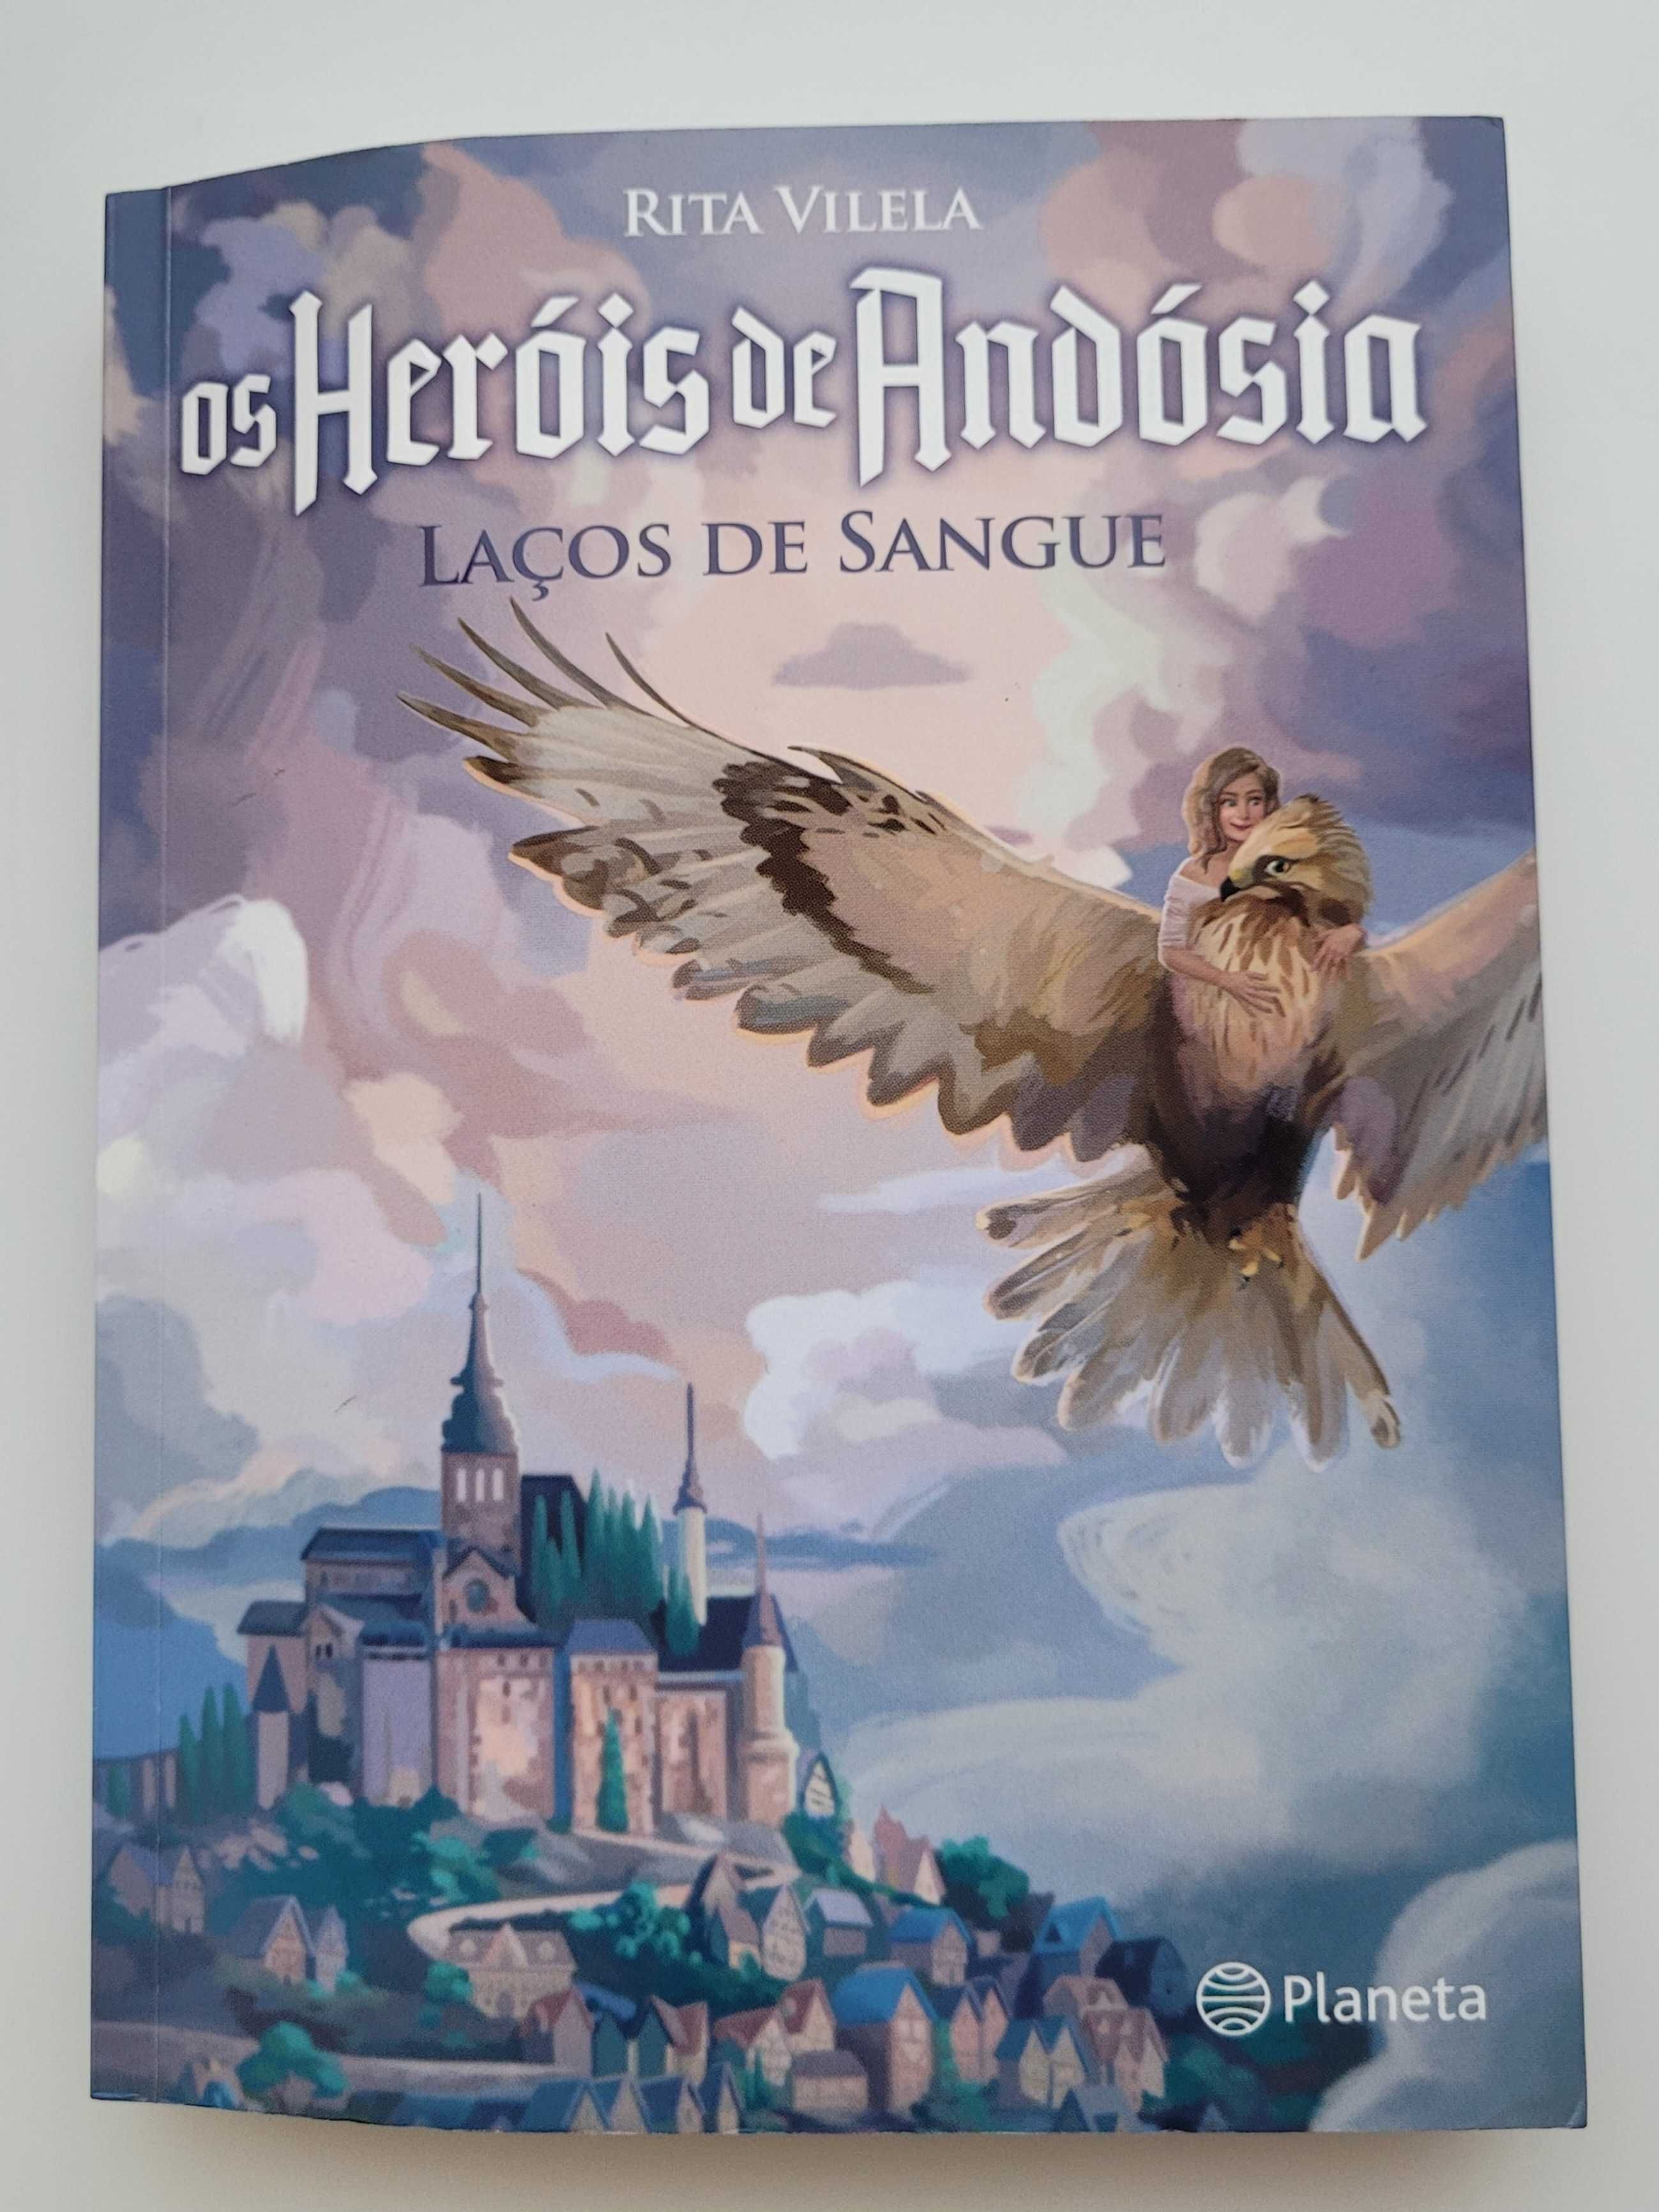 Livro " Heróis de Andósia"